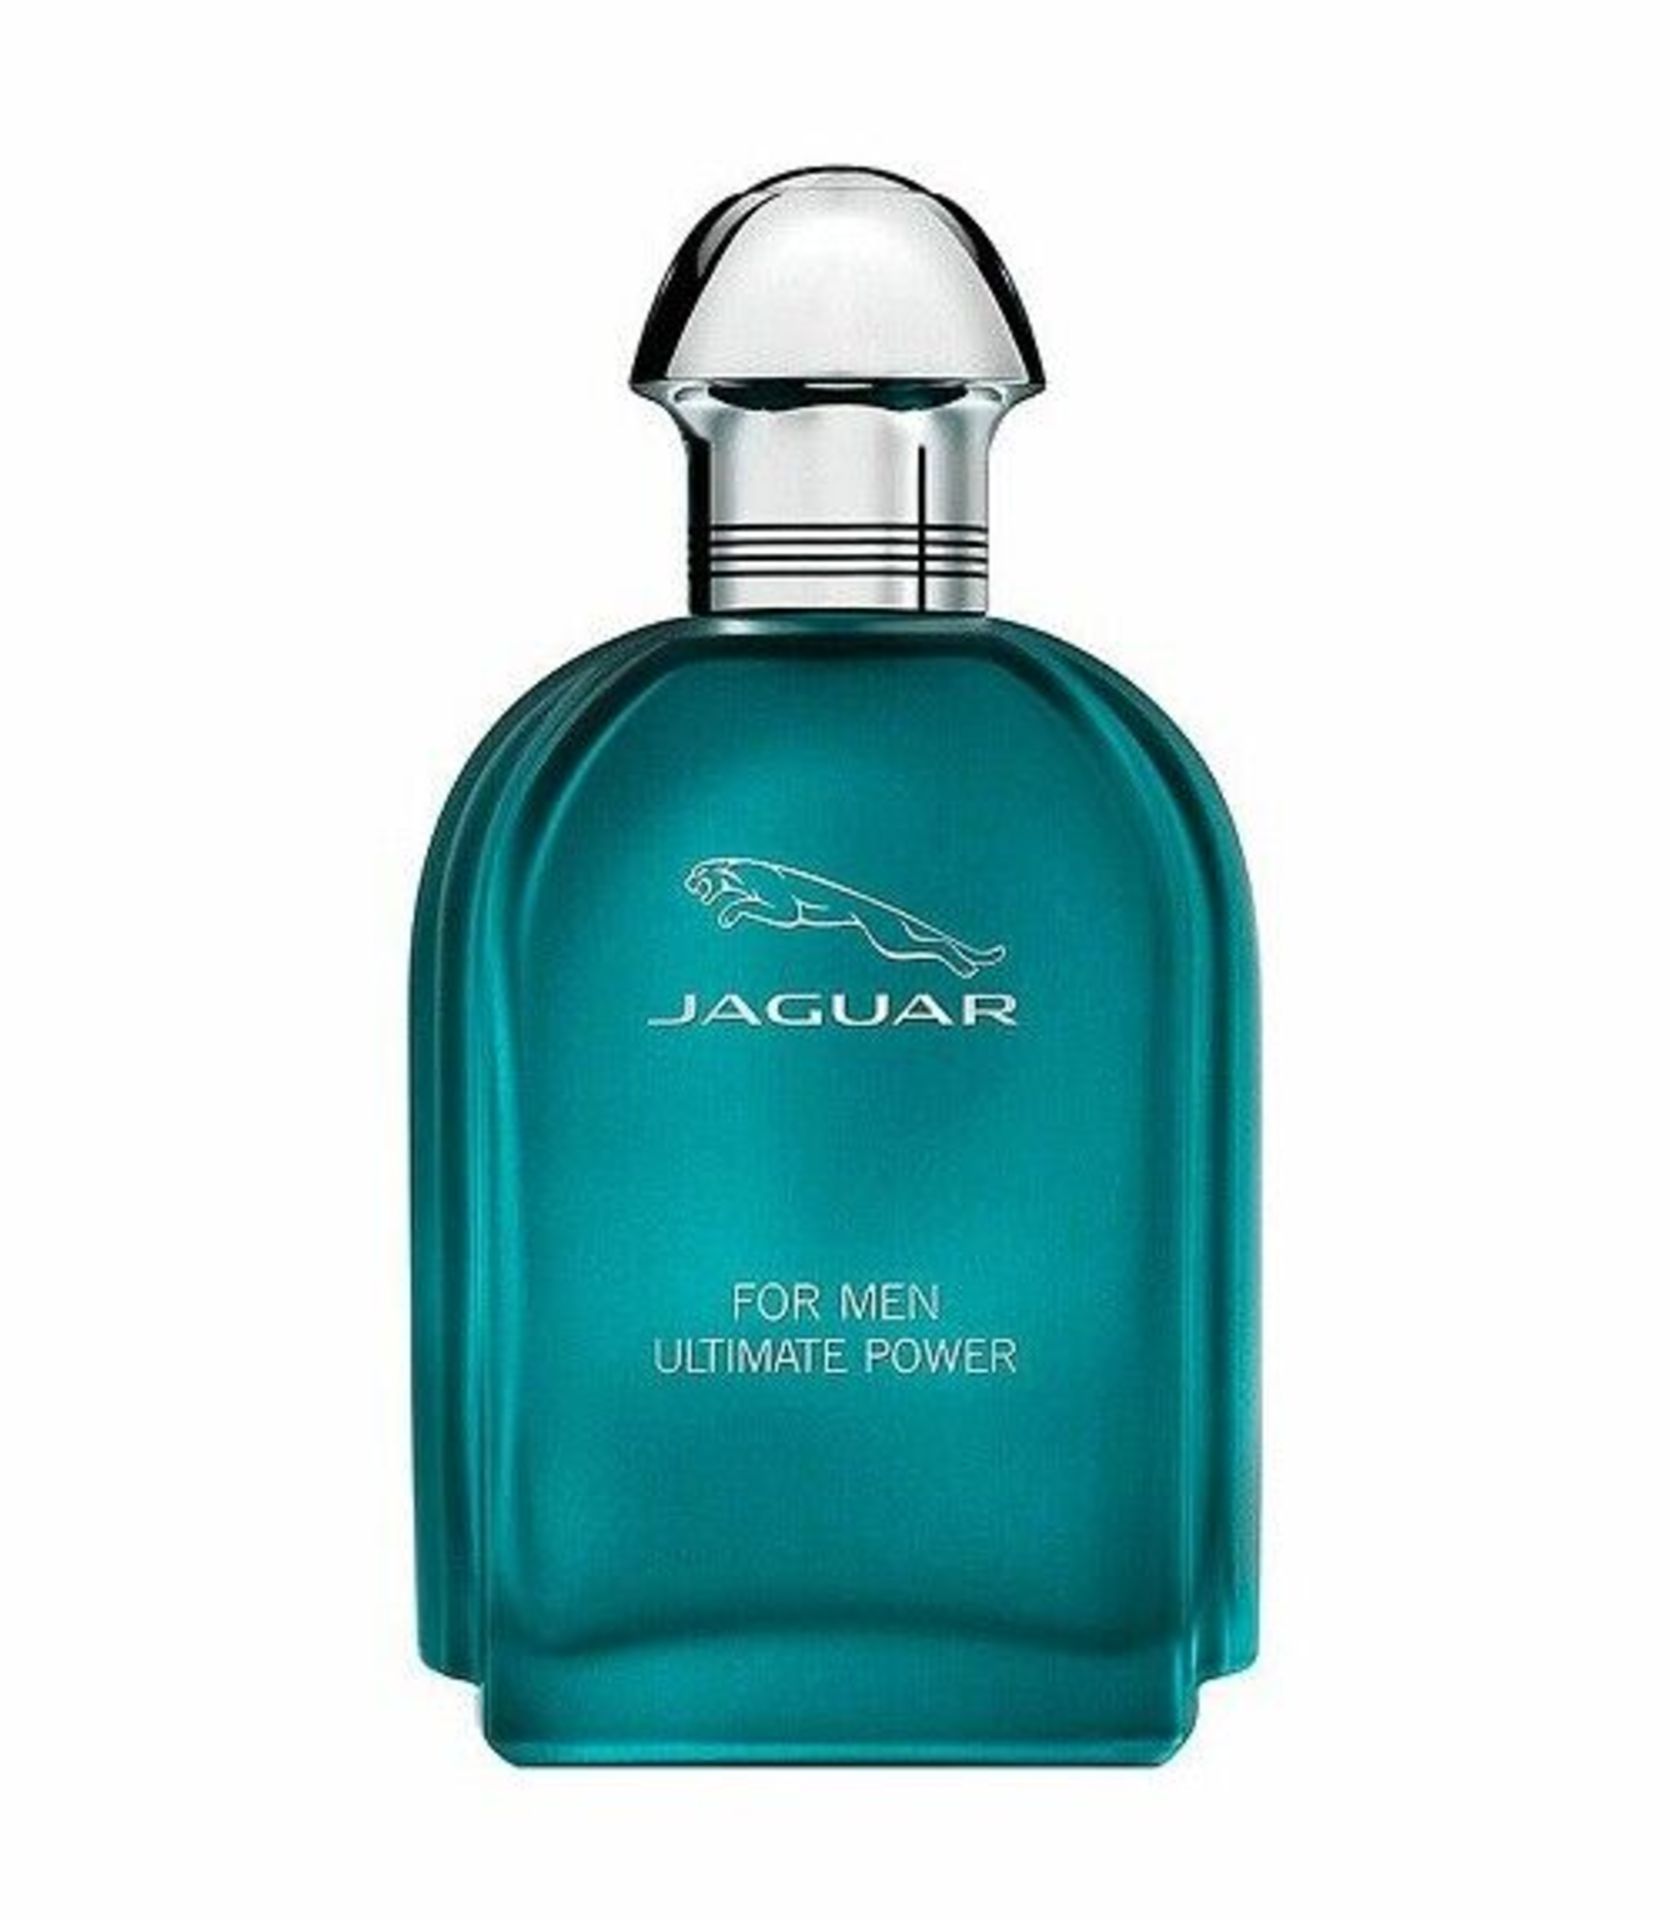 Jaguar Men's Ultimate Power Eau de Toilette 100ml Spray - Image 2 of 3